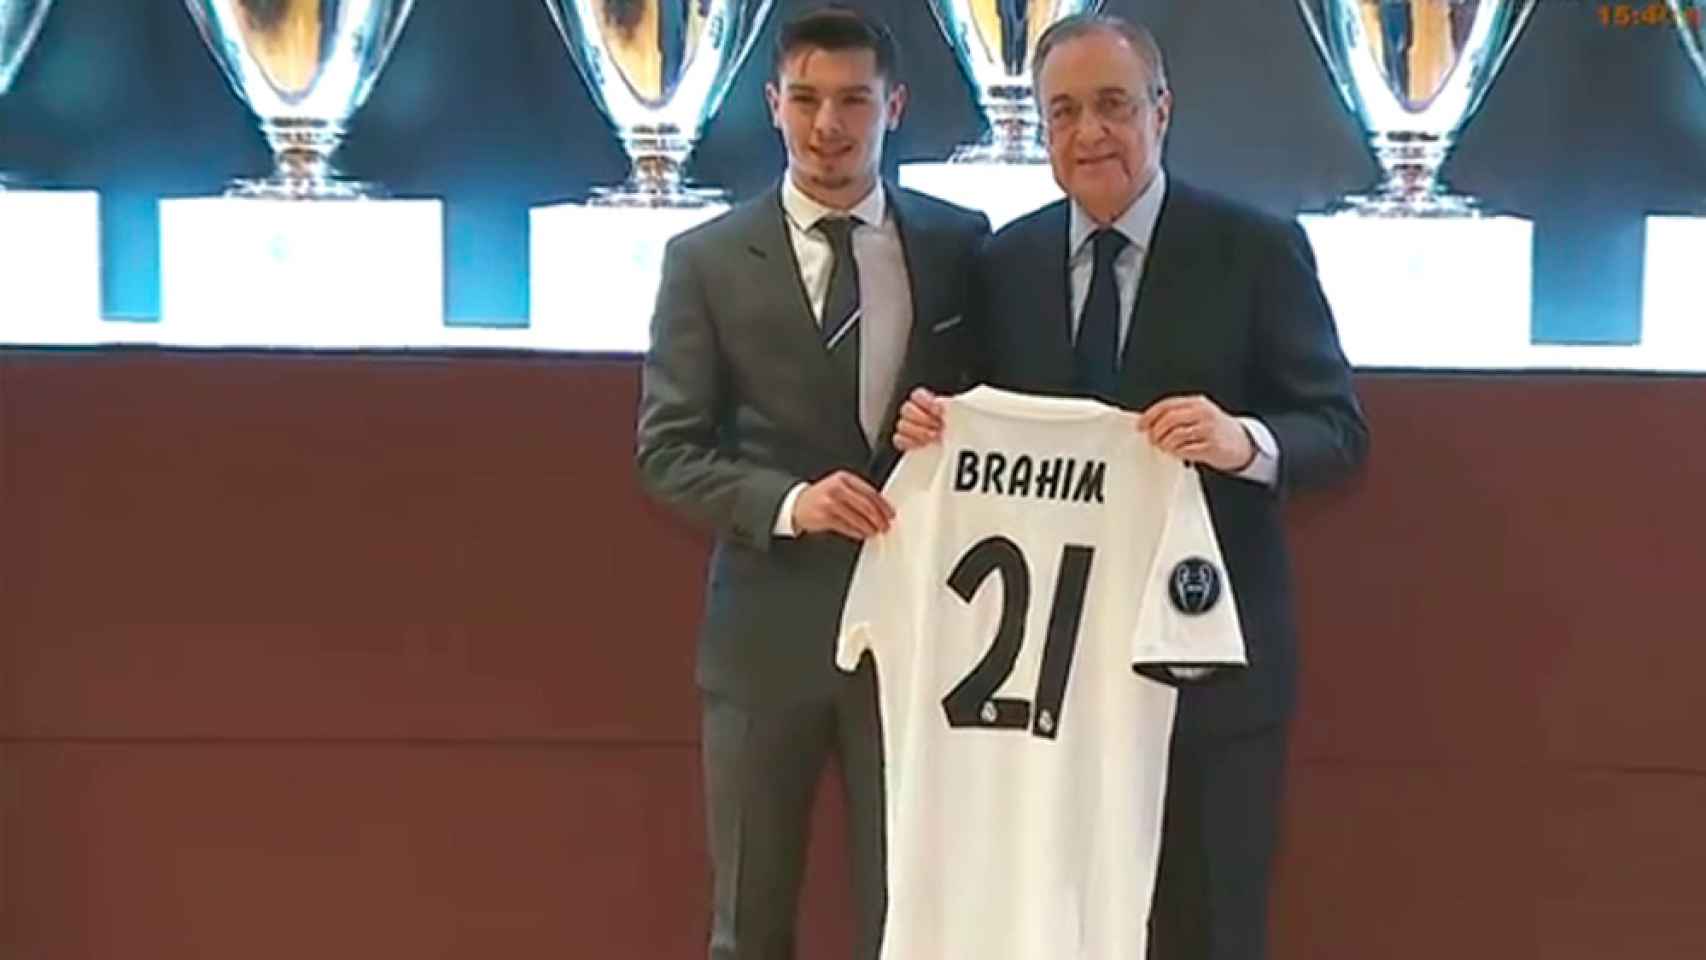 Brahim Díaz, con la camiseta del Real Madrid y el dorsal 21